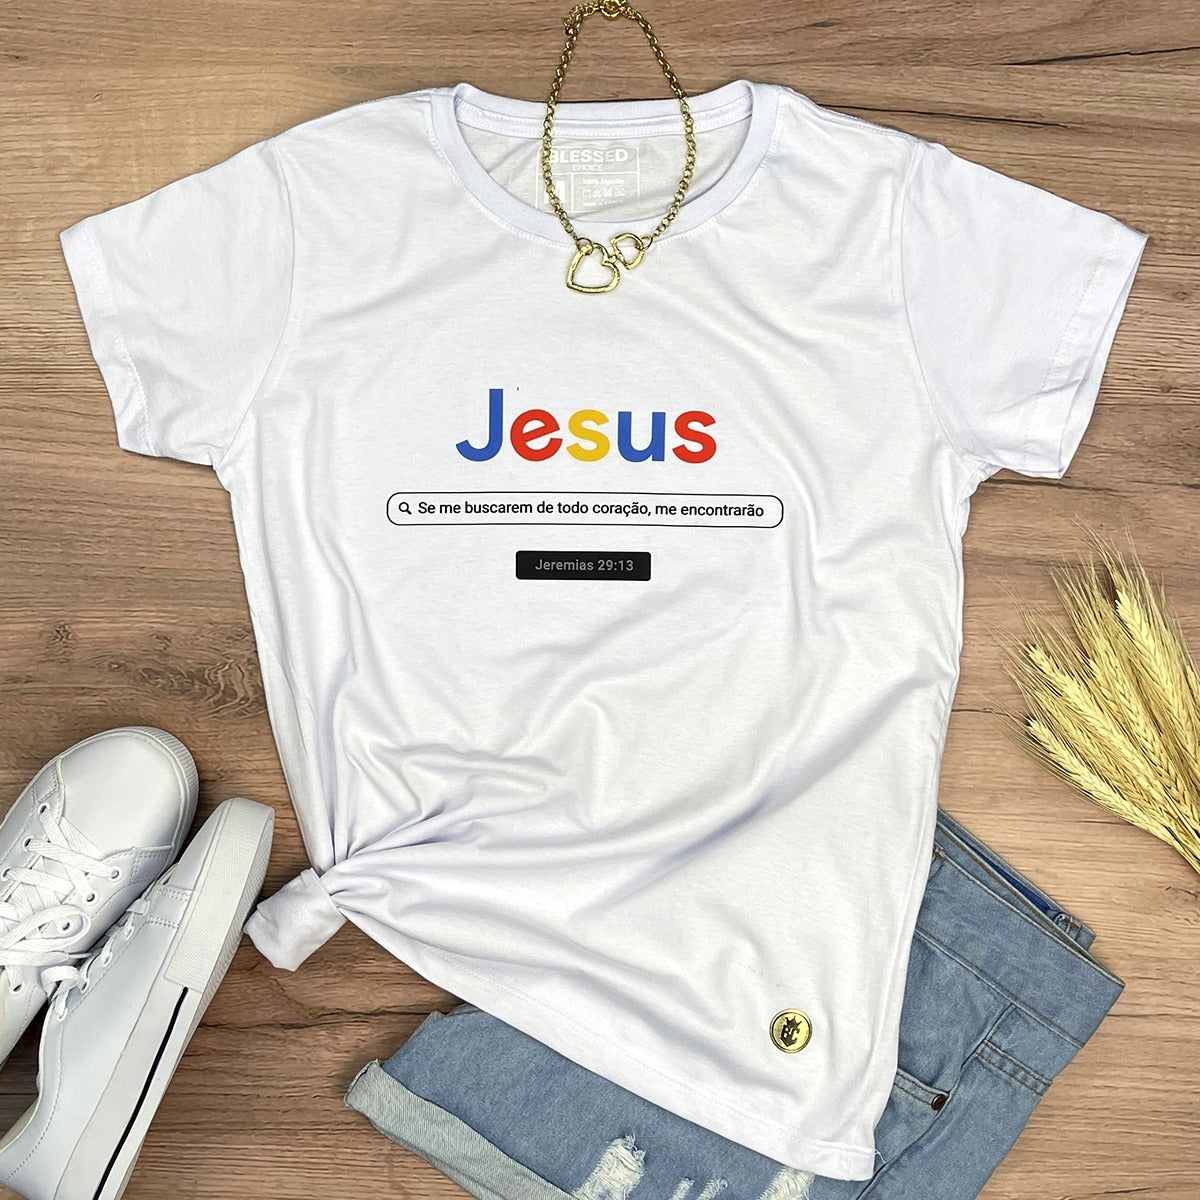 Camiseta Feminina Branca Jesus Se me buscarem de todo coração, me encontrarão